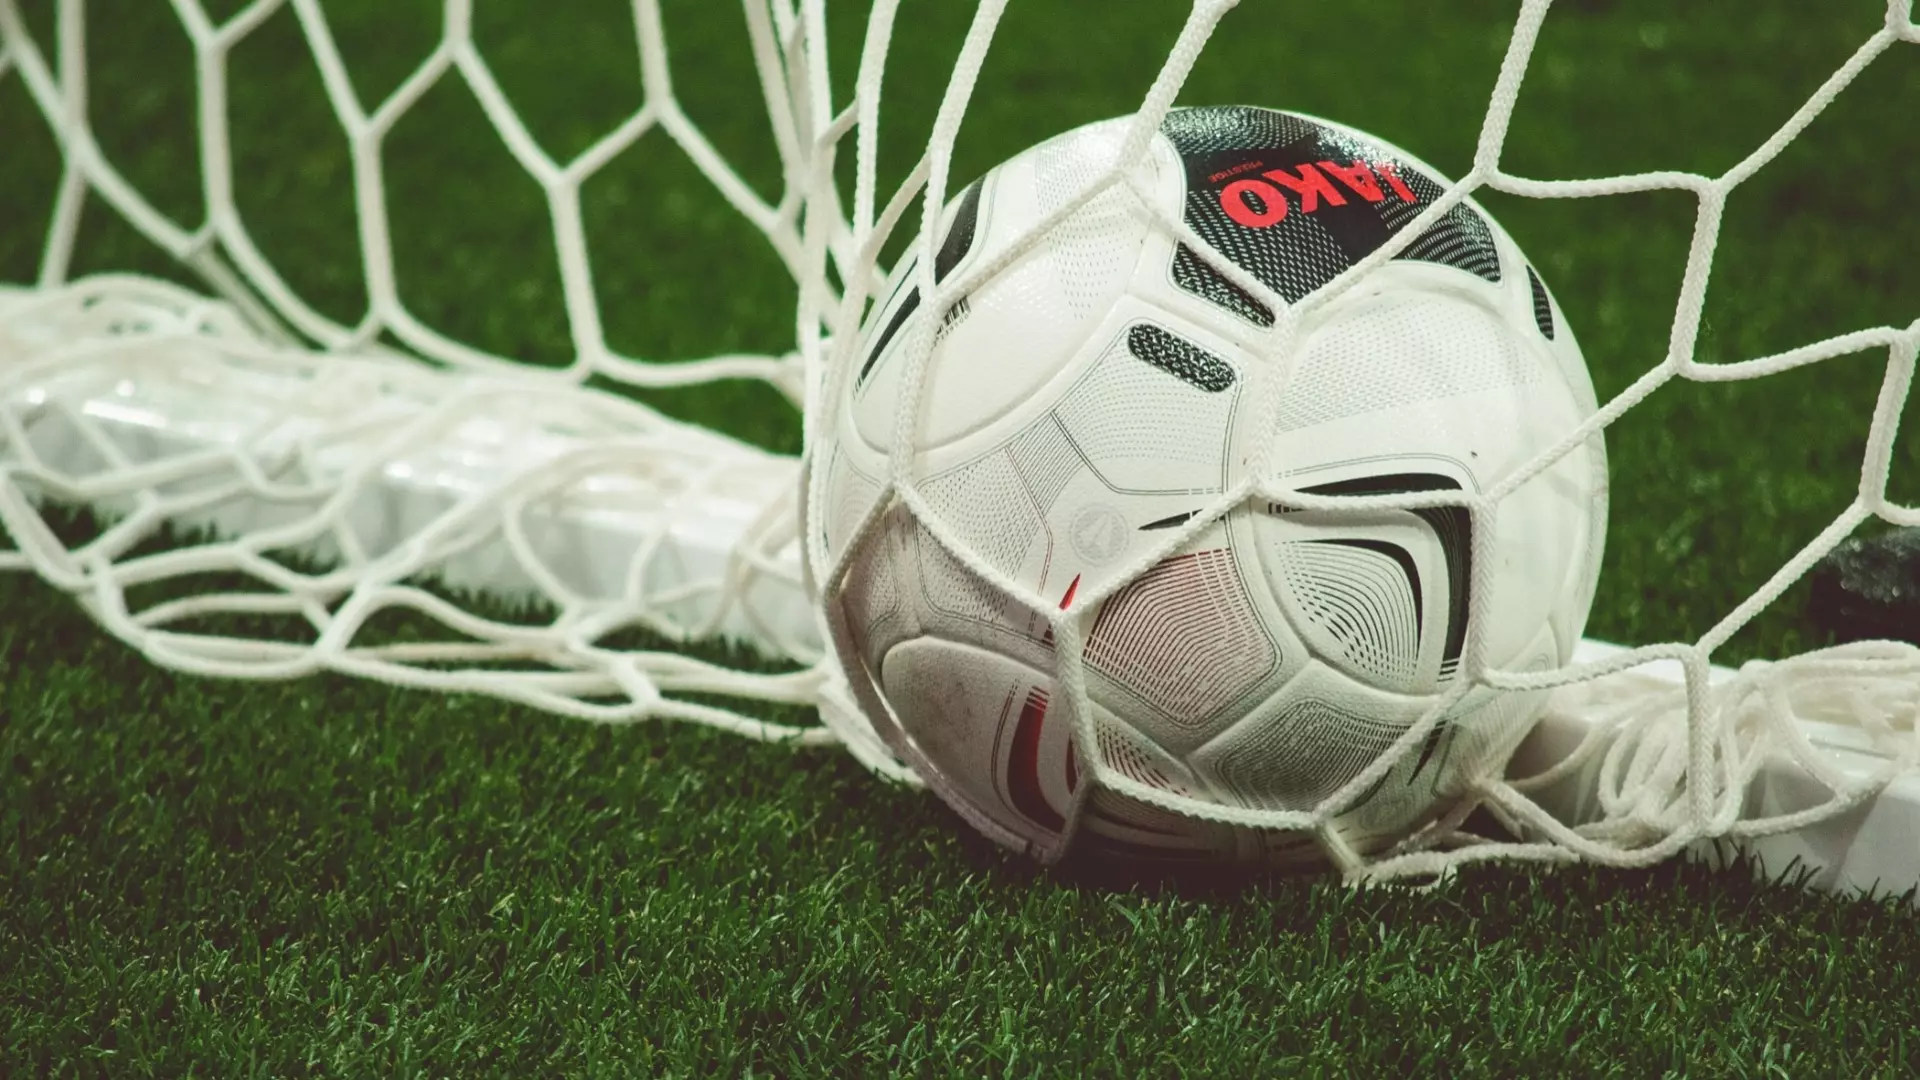 УЕФА хочет вложить деньги в турнир в Волгограде